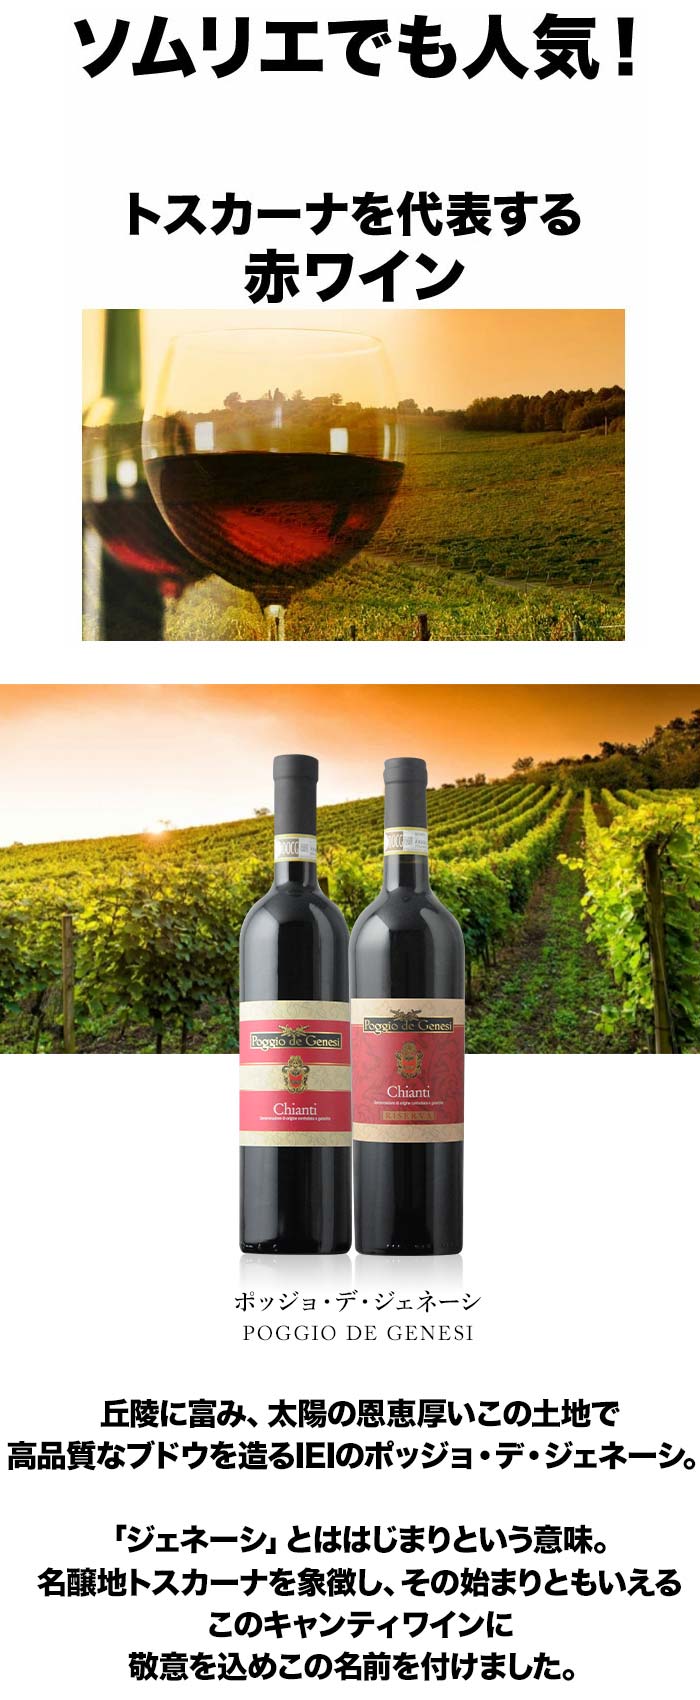 キャンティ・リゼルヴァ ポッジョ・デ・ジェネーシ（ＩＥＩ） 2016年 イタリア トスカーナ 赤ワイン フルボディ 750ml | ワイン通販ならワイン ショップソムリエ